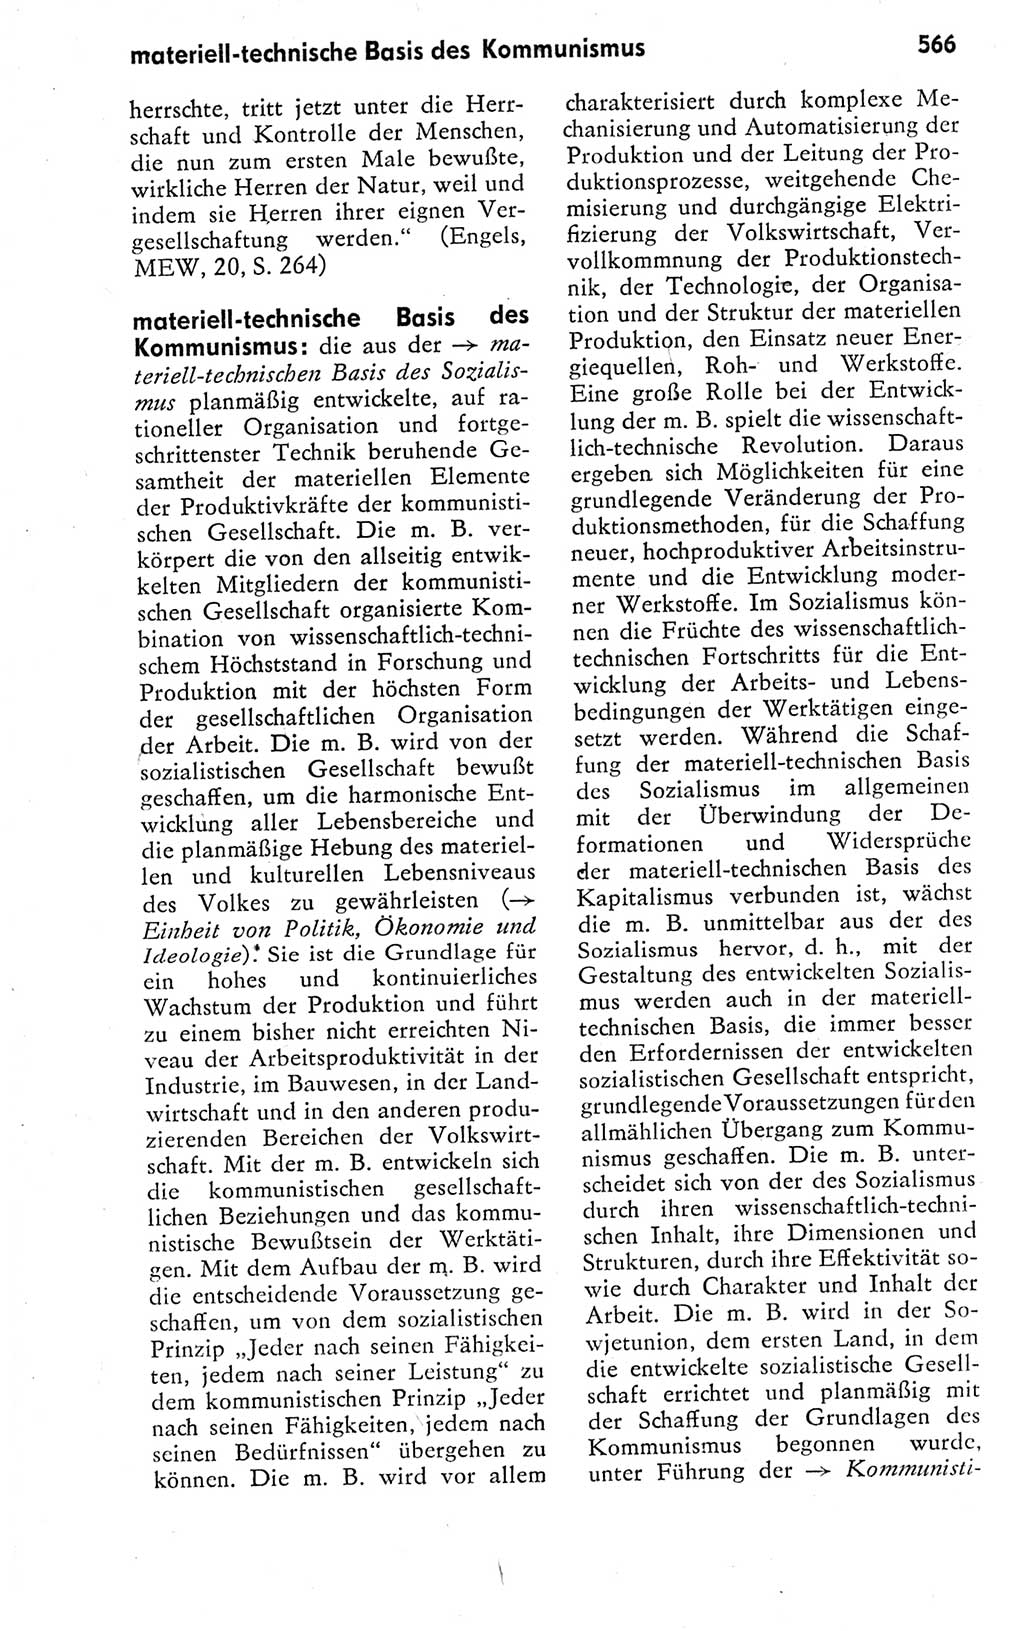 Kleines politisches Wörterbuch [Deutsche Demokratische Republik (DDR)] 1978, Seite 566 (Kl. pol. Wb. DDR 1978, S. 566)